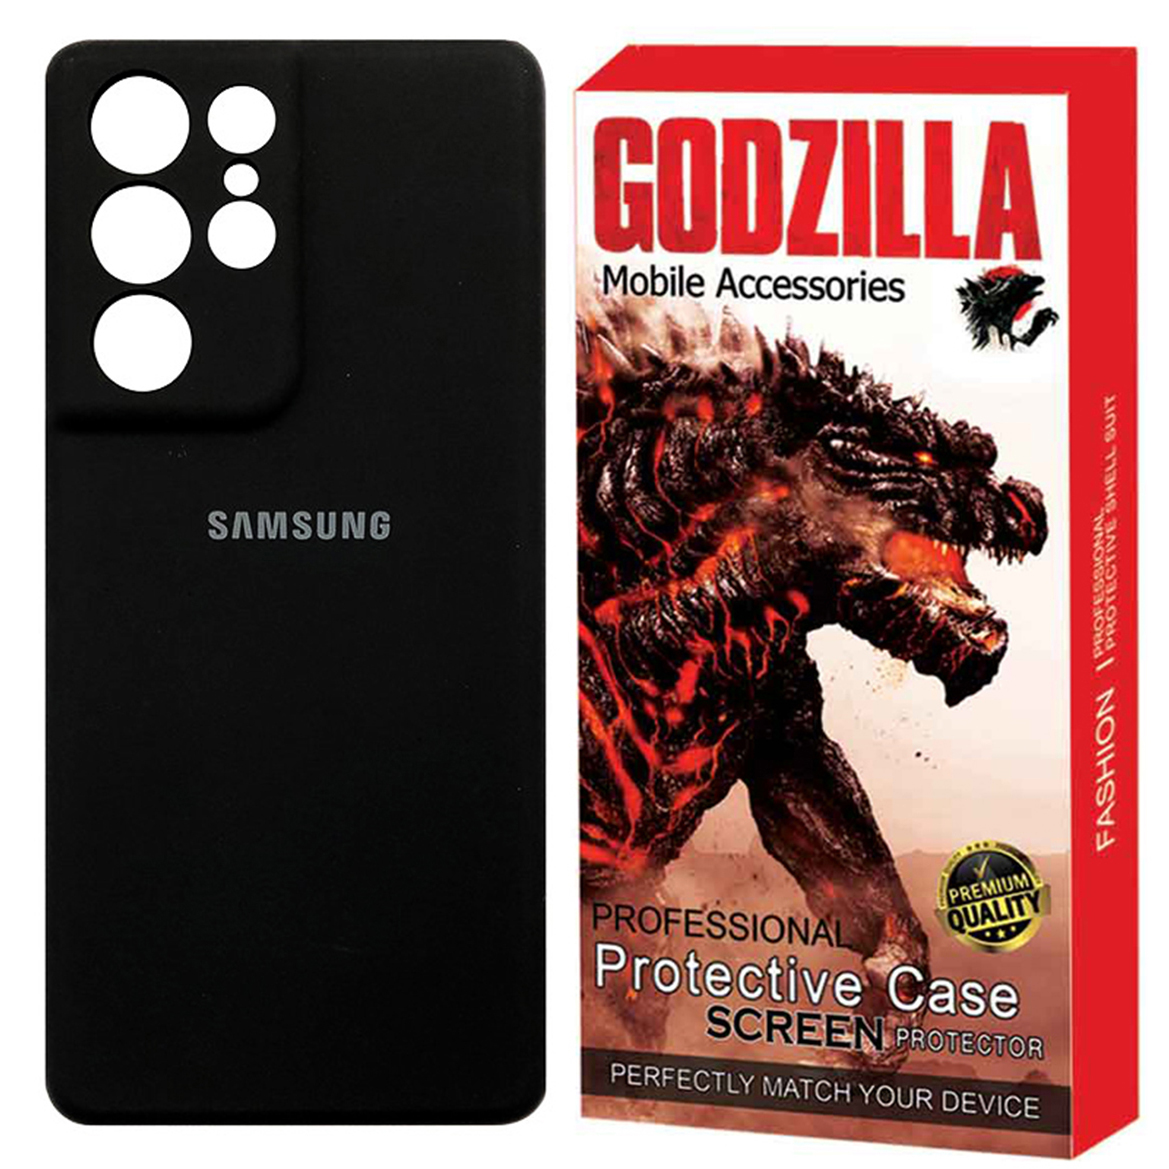 کاور گودزیلا مدل G-Sili-LE مناسب برای گوشی موبایل سامسونگ Galaxy S21 Ultra